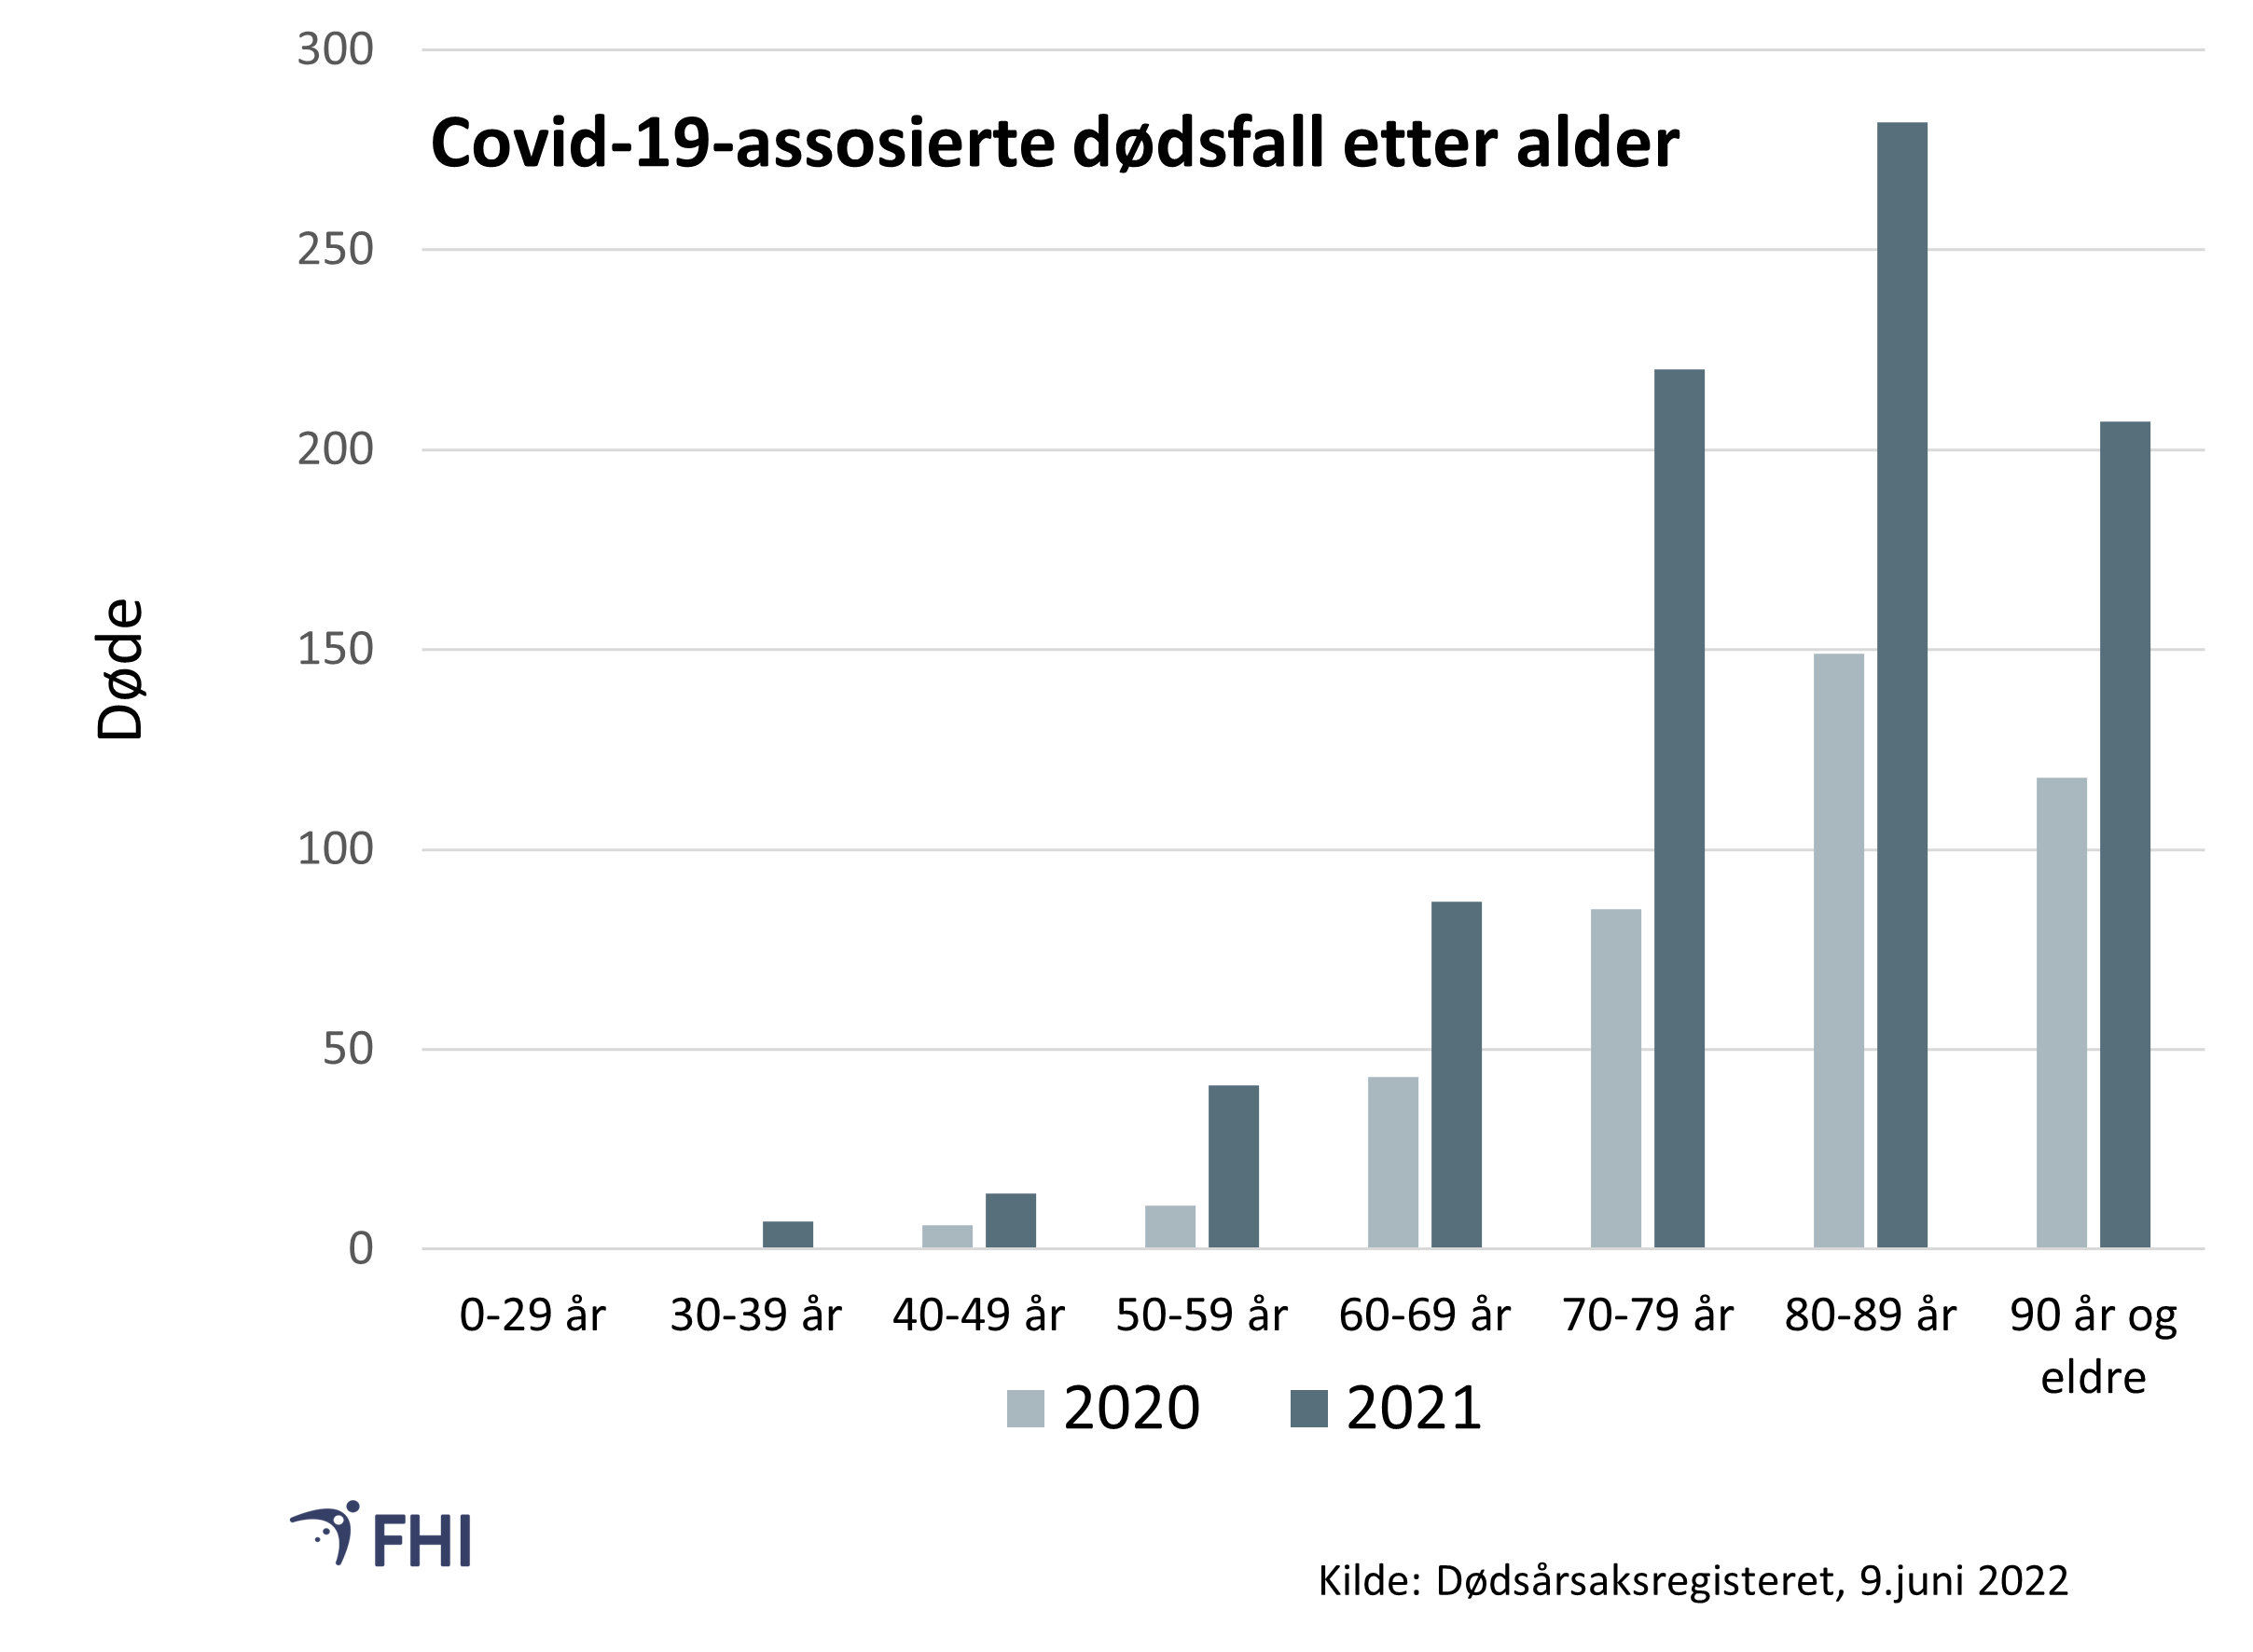 Figur 3: Andel covid-19-assosierte dødsfall i 2021(blå kolonner) fordelt på aldersgrupper hos bosatte. 2020 (i grått) til sammenlikning. Kilde: Dødsårsaksregisteret, FHI
. 